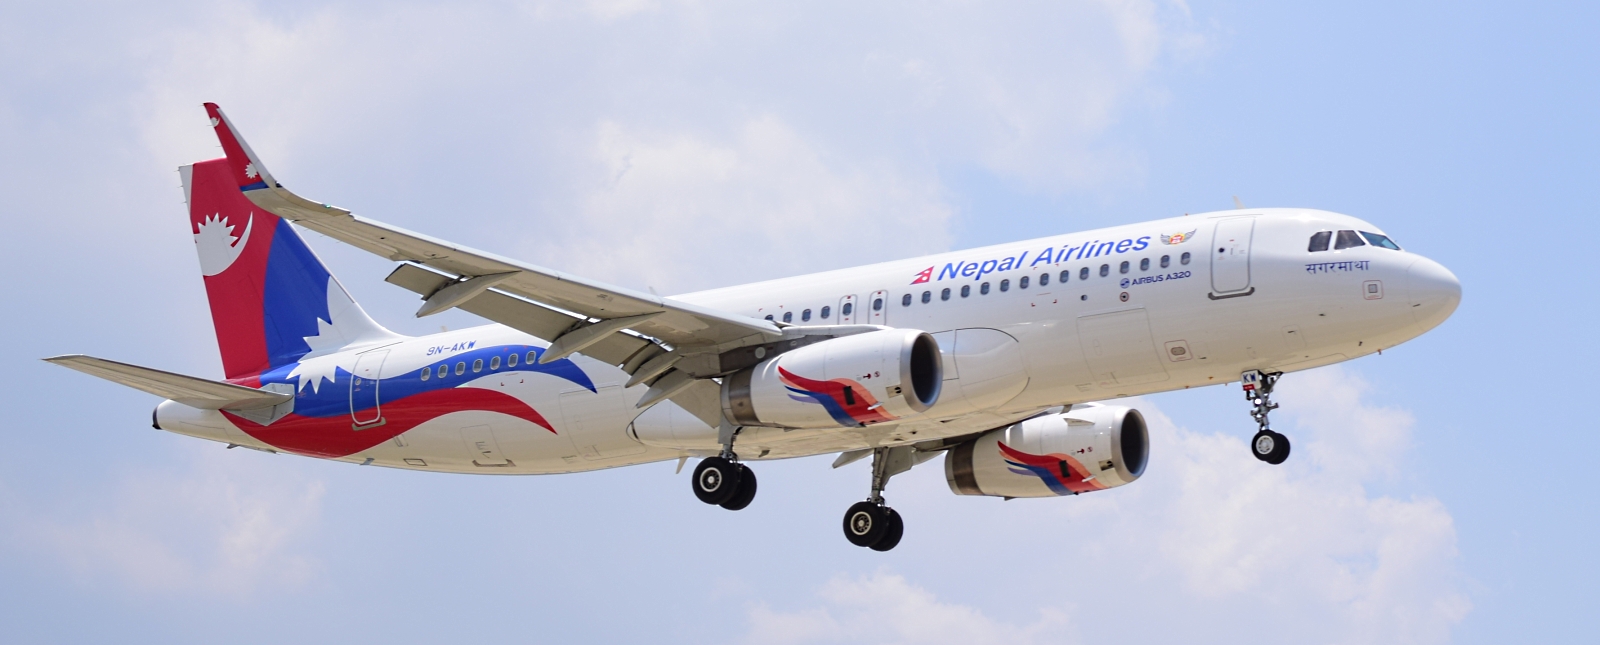 नेपाल एयरलाइन्सले दसैंका लागि १२ आन्तरिक फ्लाइट थप्यो, कहाँ कुन समयका लागि?